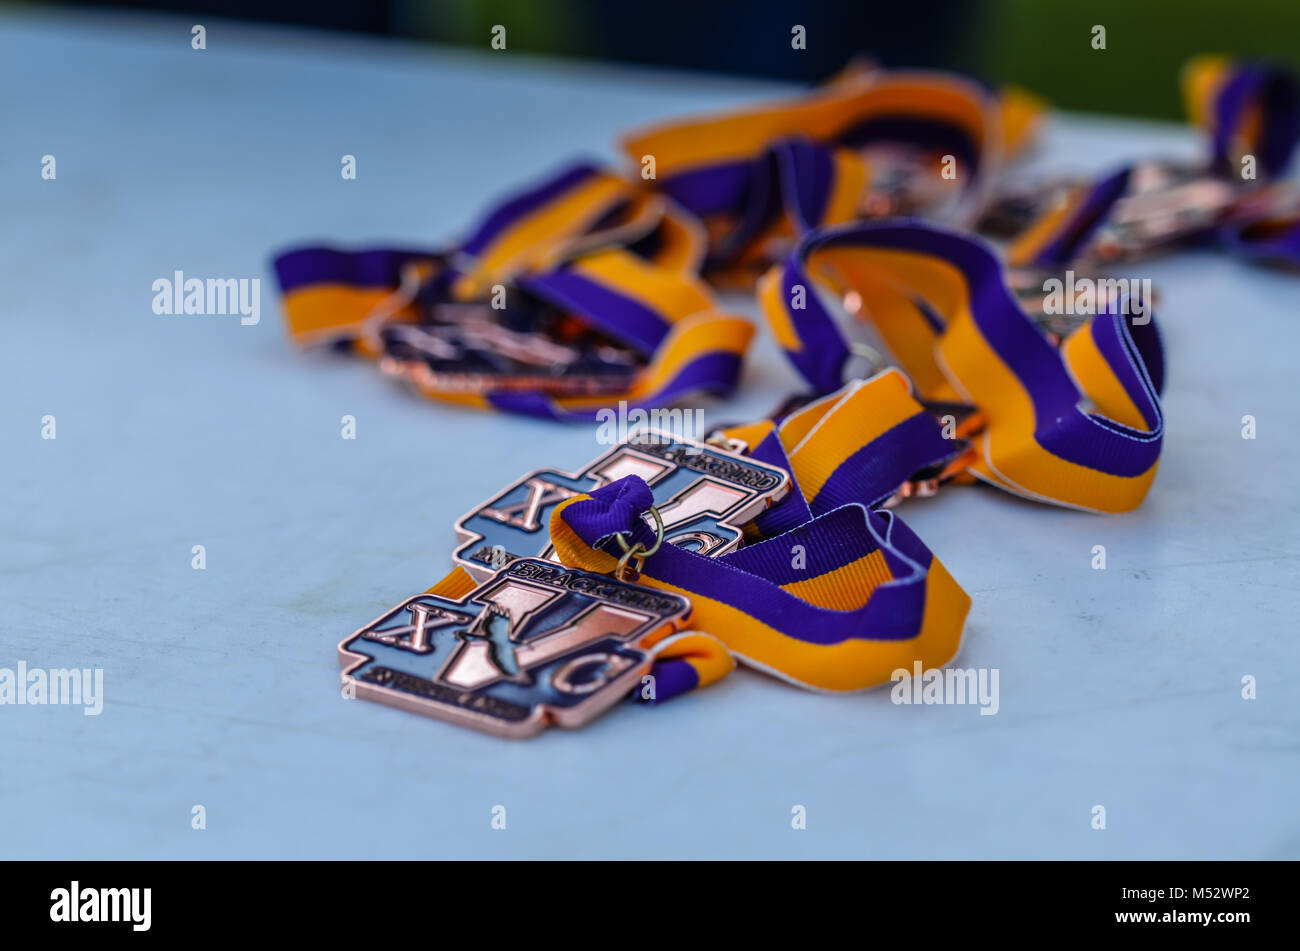 Bronze cross country Medaillen auf Purpur und Gold Bänder. Stockfoto